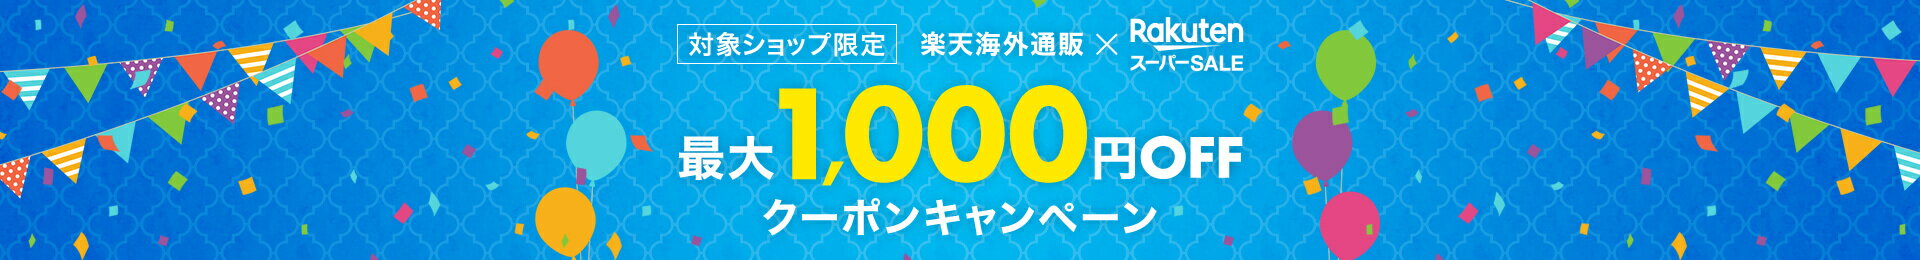 楽天海外通販 最大1,000円OFF クーポンキャンペーン